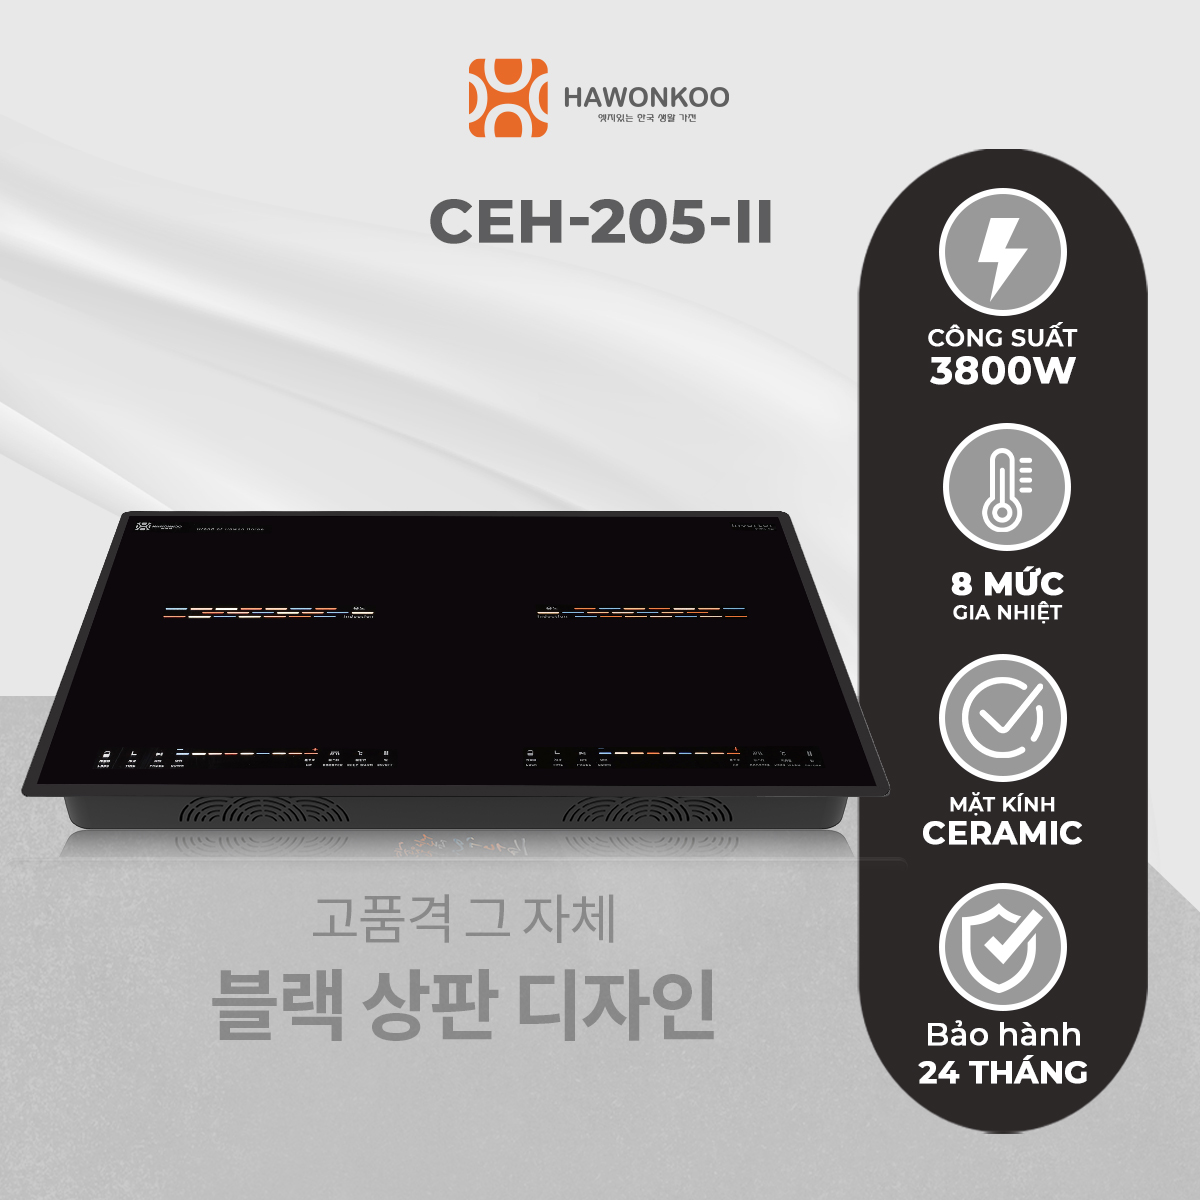 Bếp Điện Từ Đôi HAWONKOO CEH-205-II Inverter 4000W Hàng Chính Hãng Bảo Hành 2 Năm - Thương Hiệu Hàn Quốc